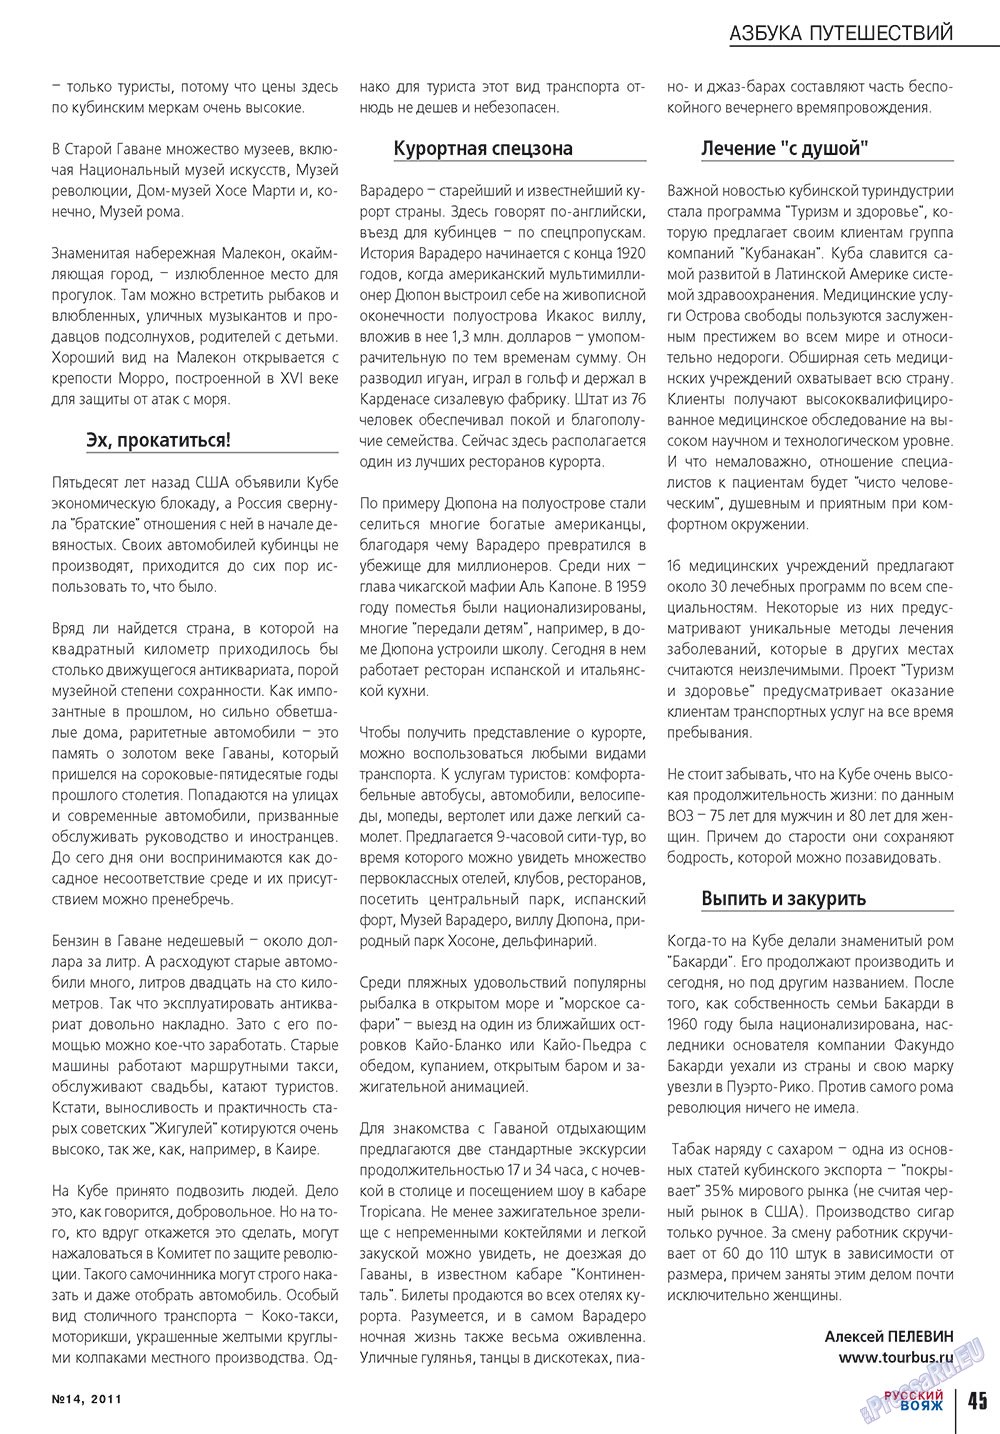 Русский вояж (журнал). 2011 год, номер 14, стр. 45